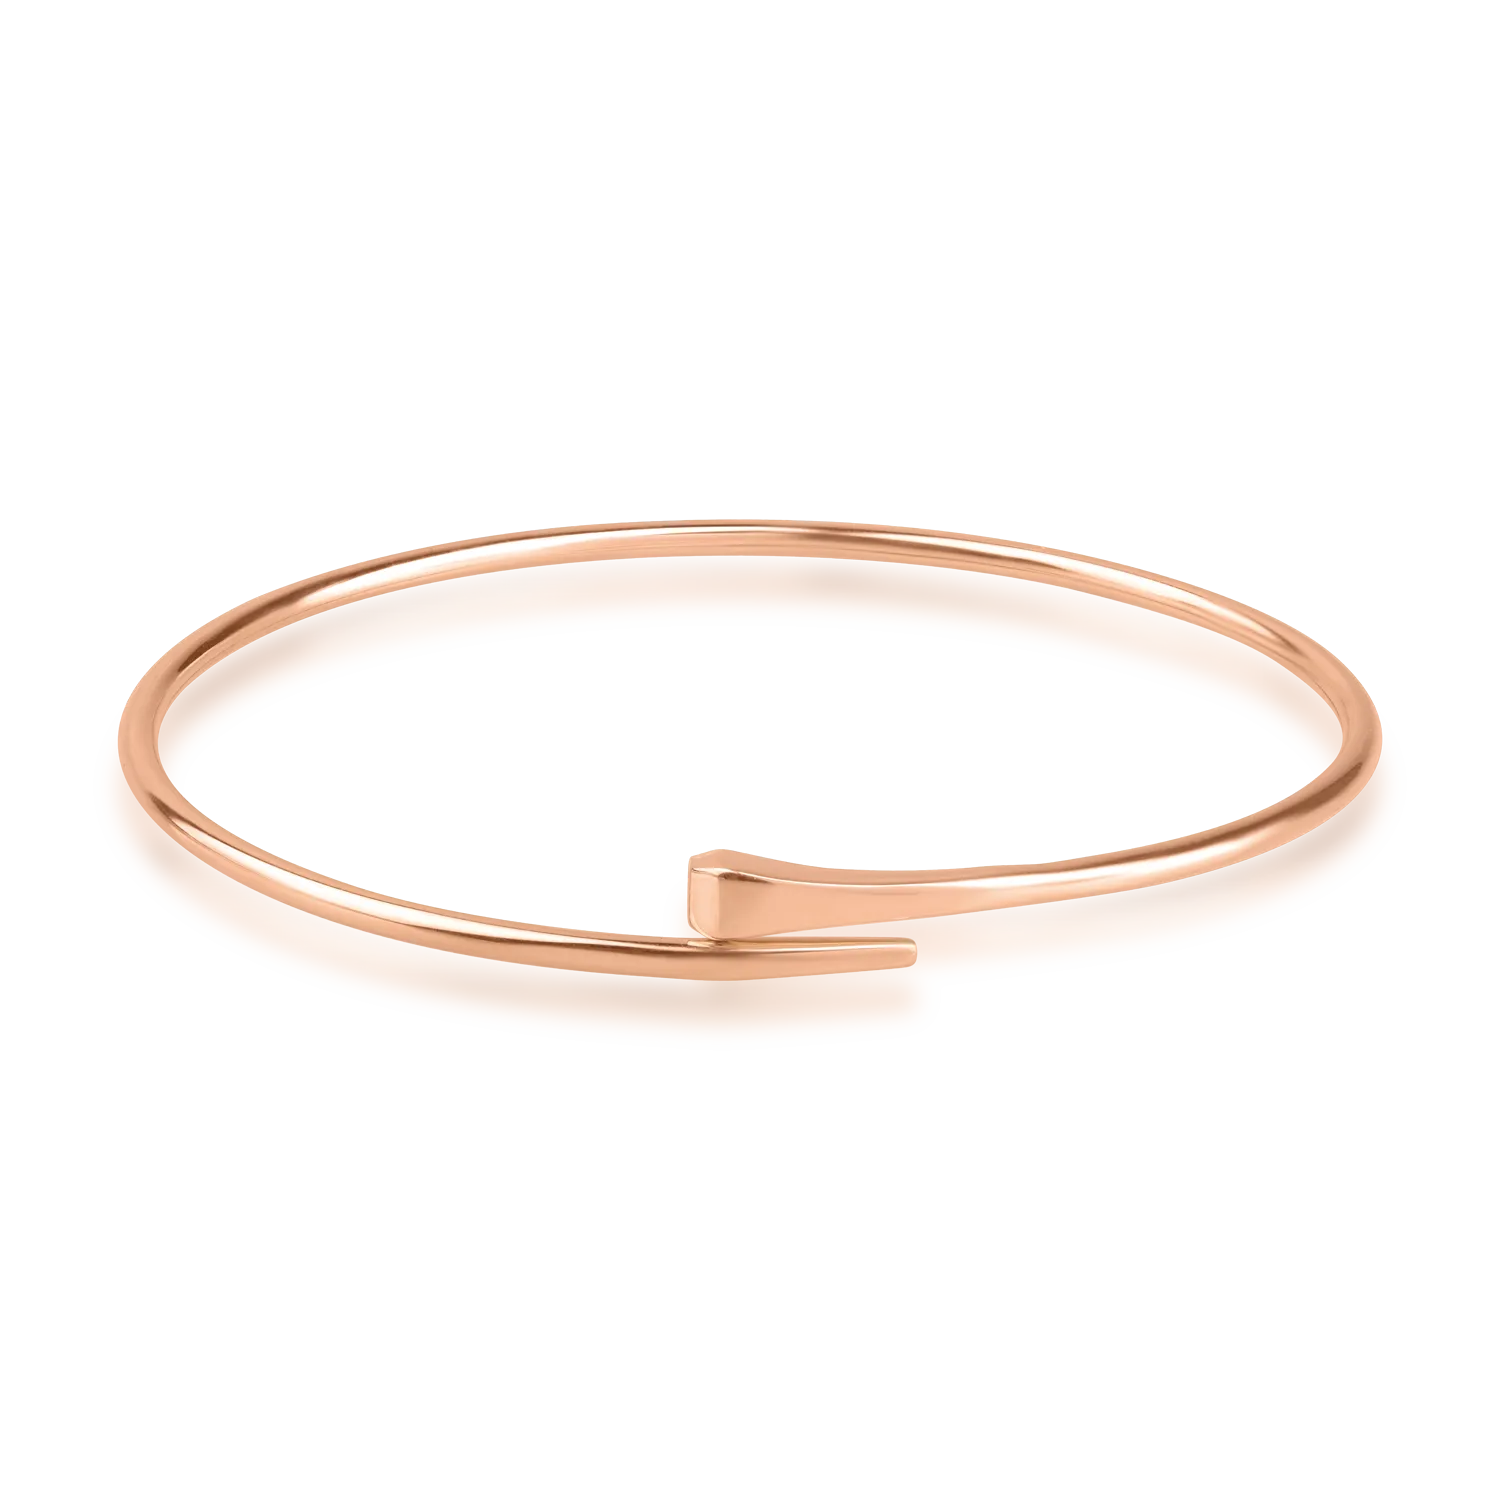 Rose gold bracelet